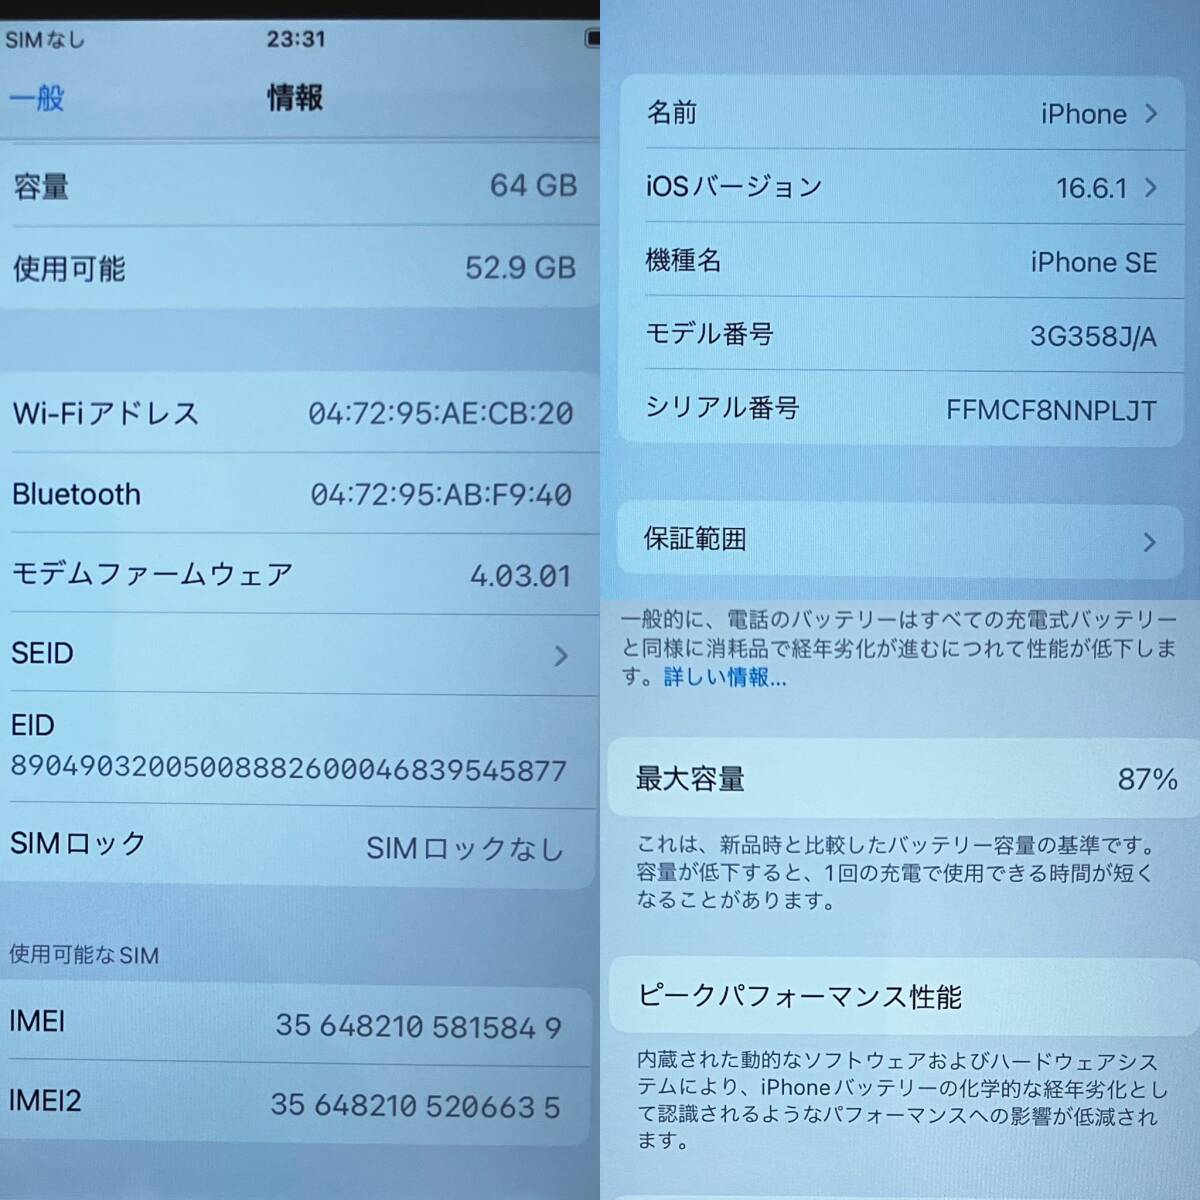 【中古】SIMフリー デモ機 第2世代 iPhone SE 64GB レッド 3G358J/A MX9U2J/Aと同等 SE2_画像9